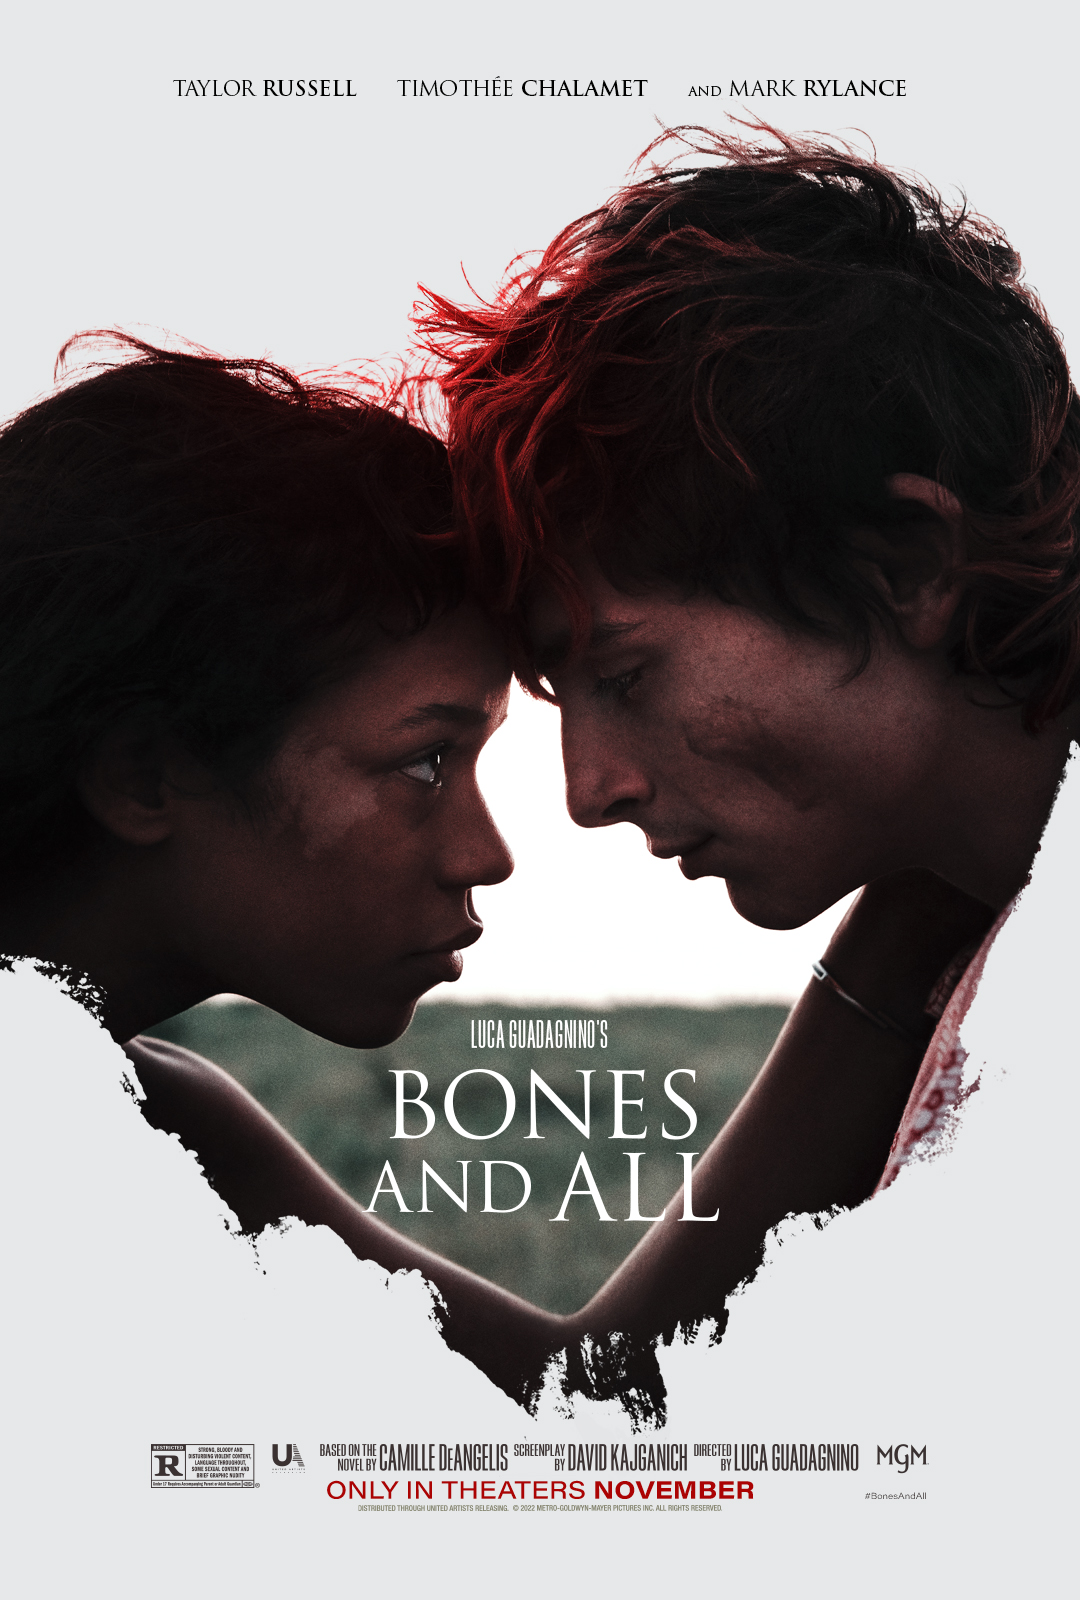 Timothée Chalamet in officiële Bones and All trailer & poster door Luca Guadagnino